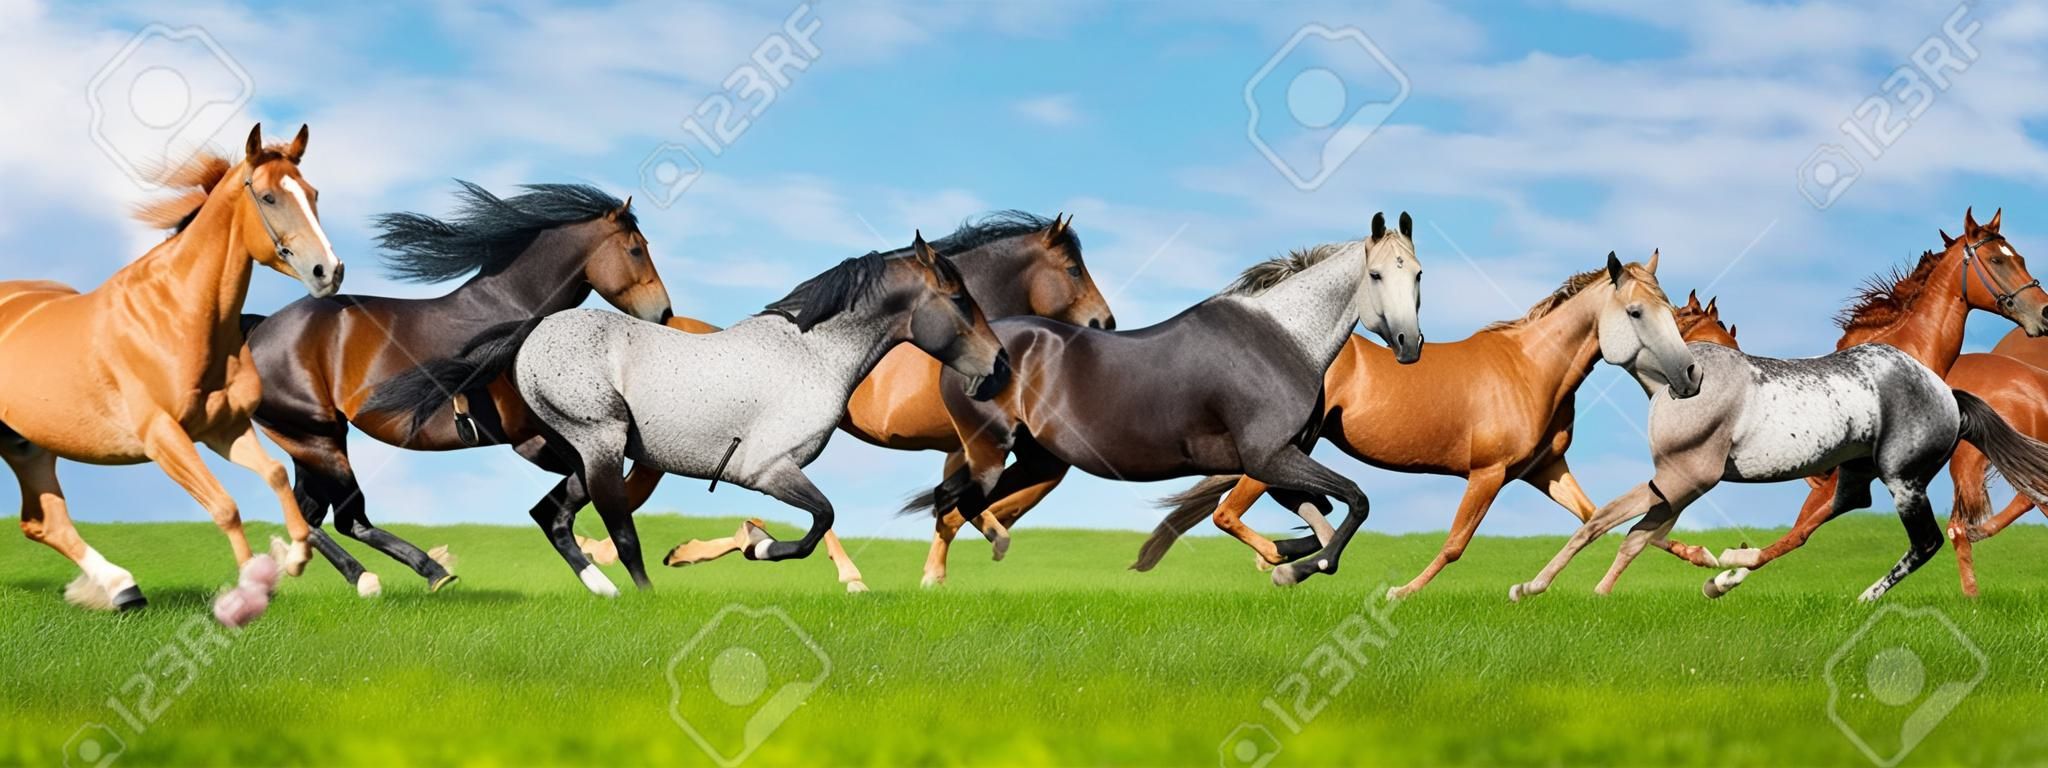 Paarden gratis run galop i groen veld met blauwe lucht achter